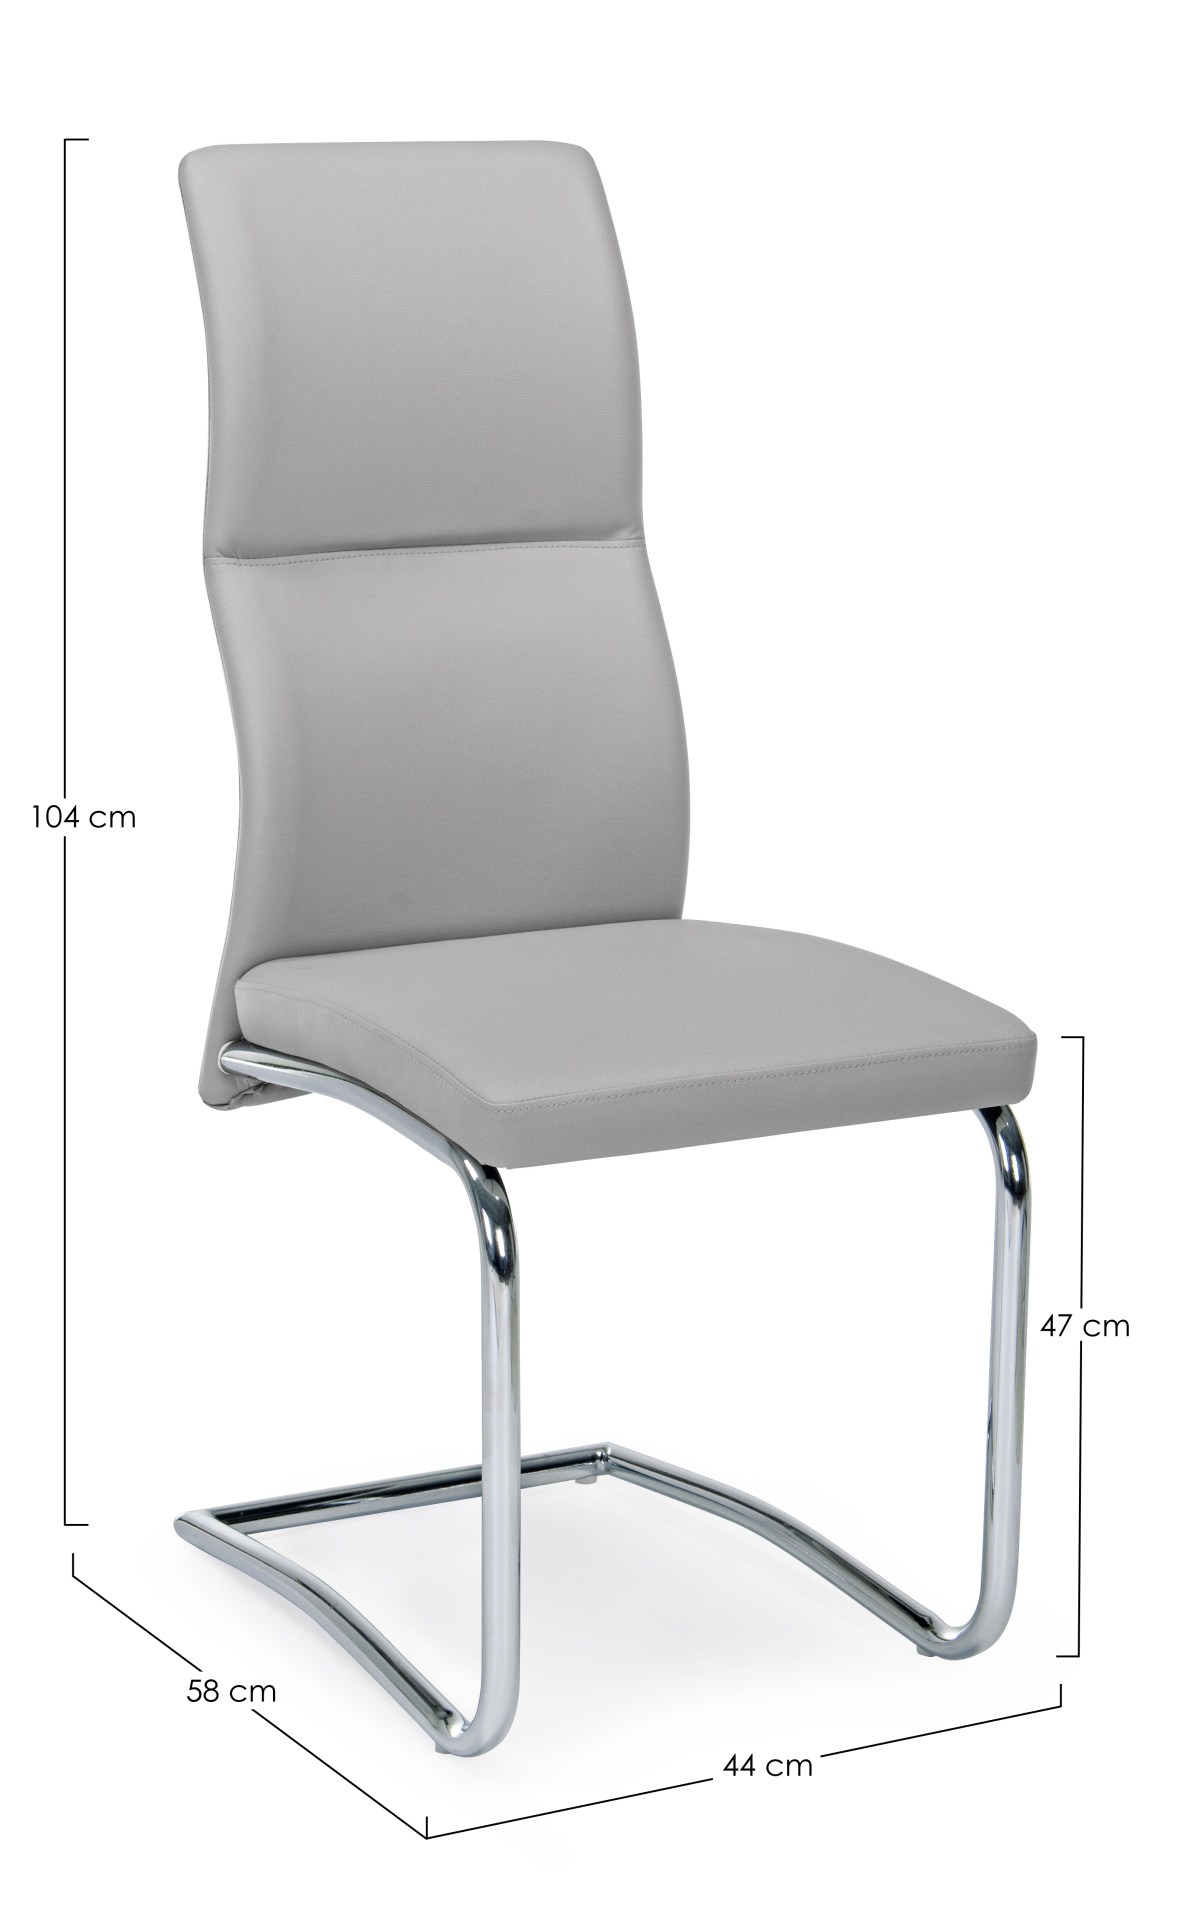 Der Esszimmerstuhl Thelma überzeugt mit seinem modernem Design. Gefertigt wurde der Stuhl aus Kunstleder, welches einen hellgrauen Farbton besitzt. Das Gestell ist aus Metall und ist Silber. Die Sitzhöhe beträgt 47 cm.